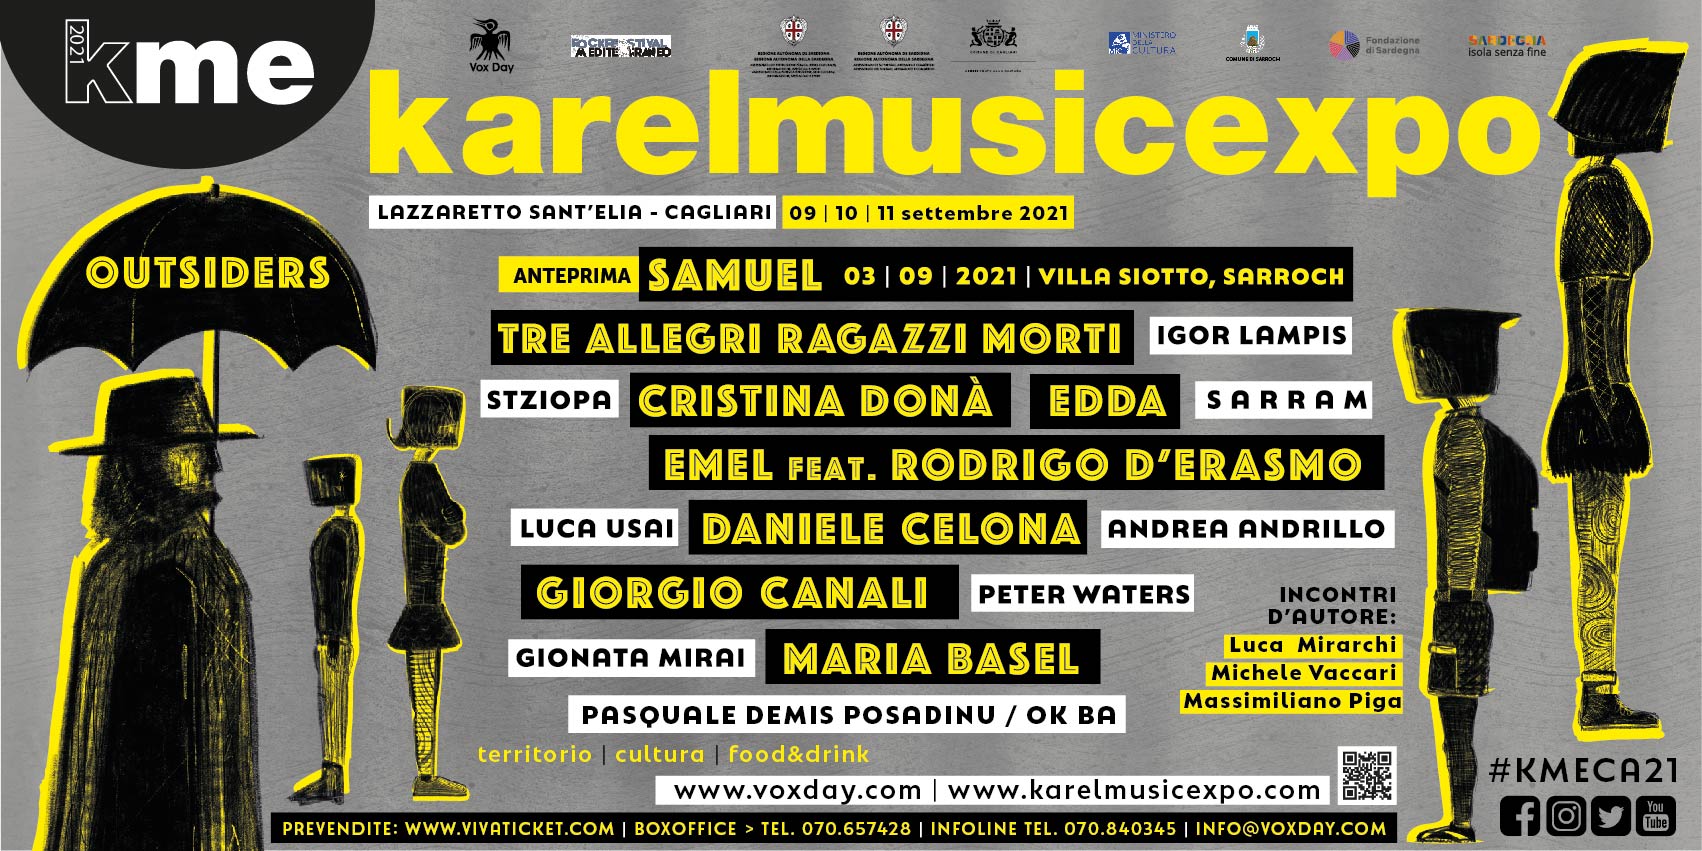 Foto 1 - KAREL MUSIC EXPO: Dal 9 all'11 settembre torna a Cagliari il Festival delle culture resistenti. Il programma completo della 15^ edizione